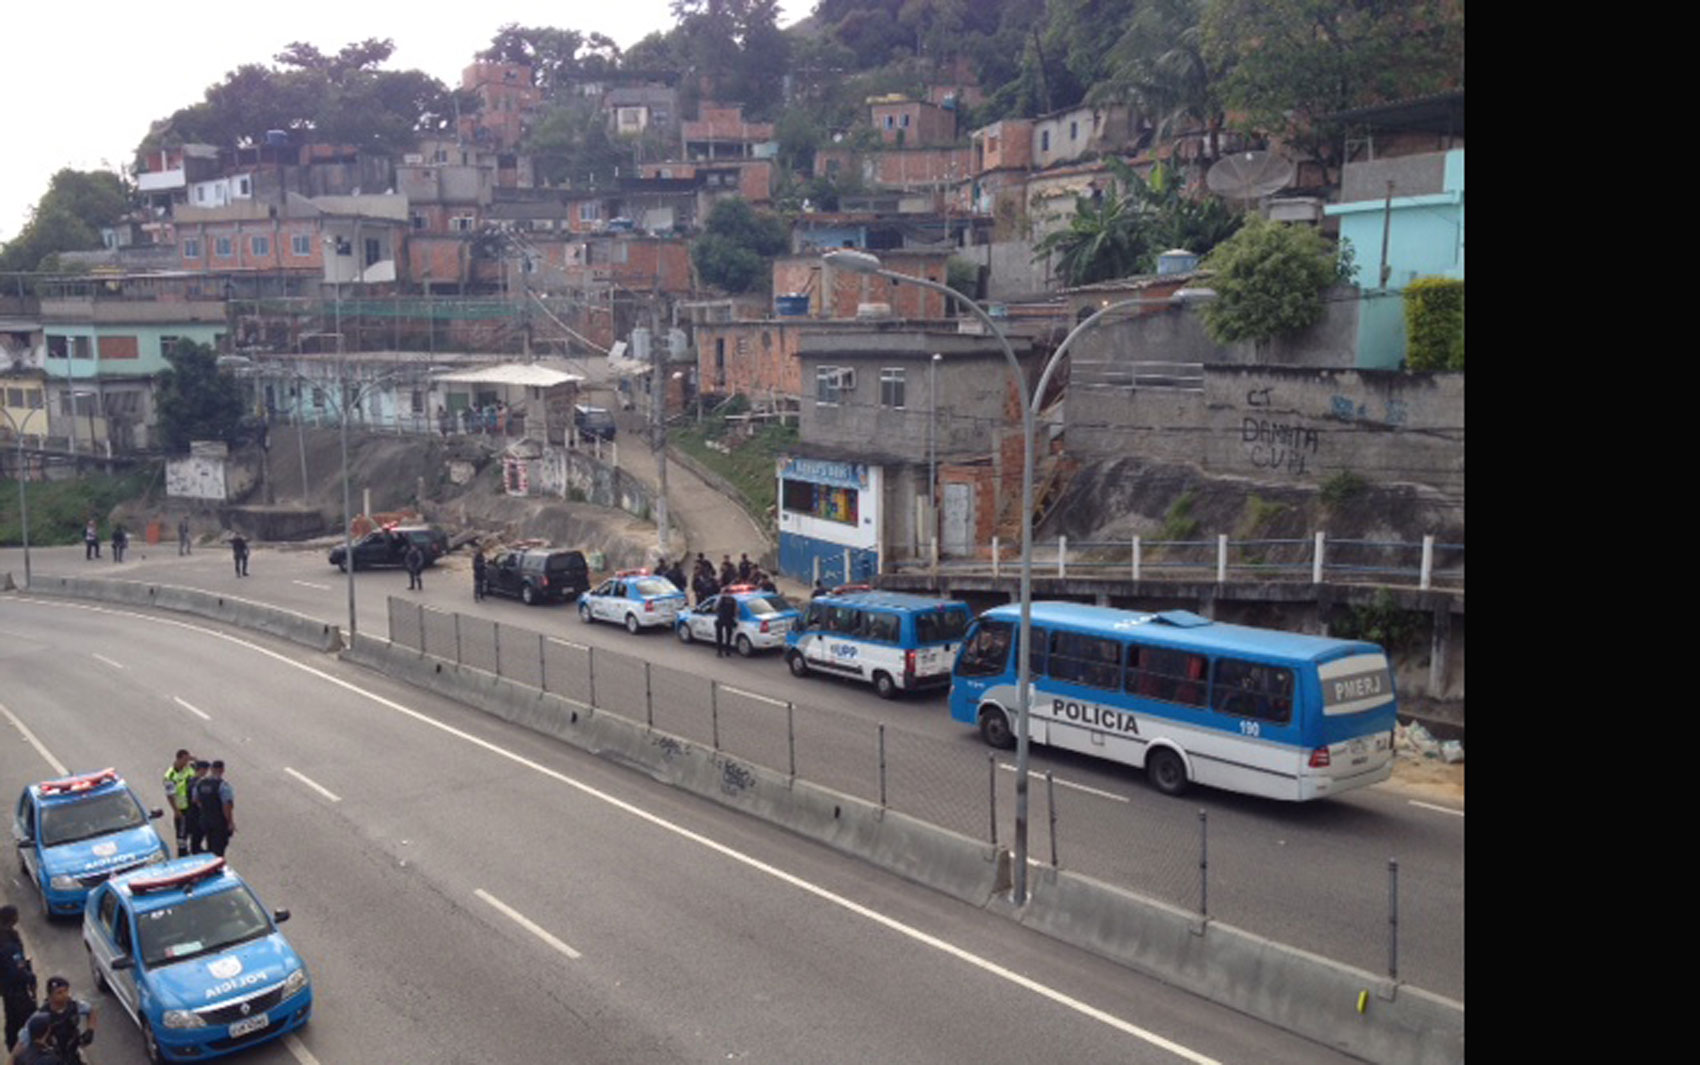 Autoestrada Grajaú-Jacarepaguá ficou interditada por aproximadamente uma hora e meia; via foi liberada às 6h45